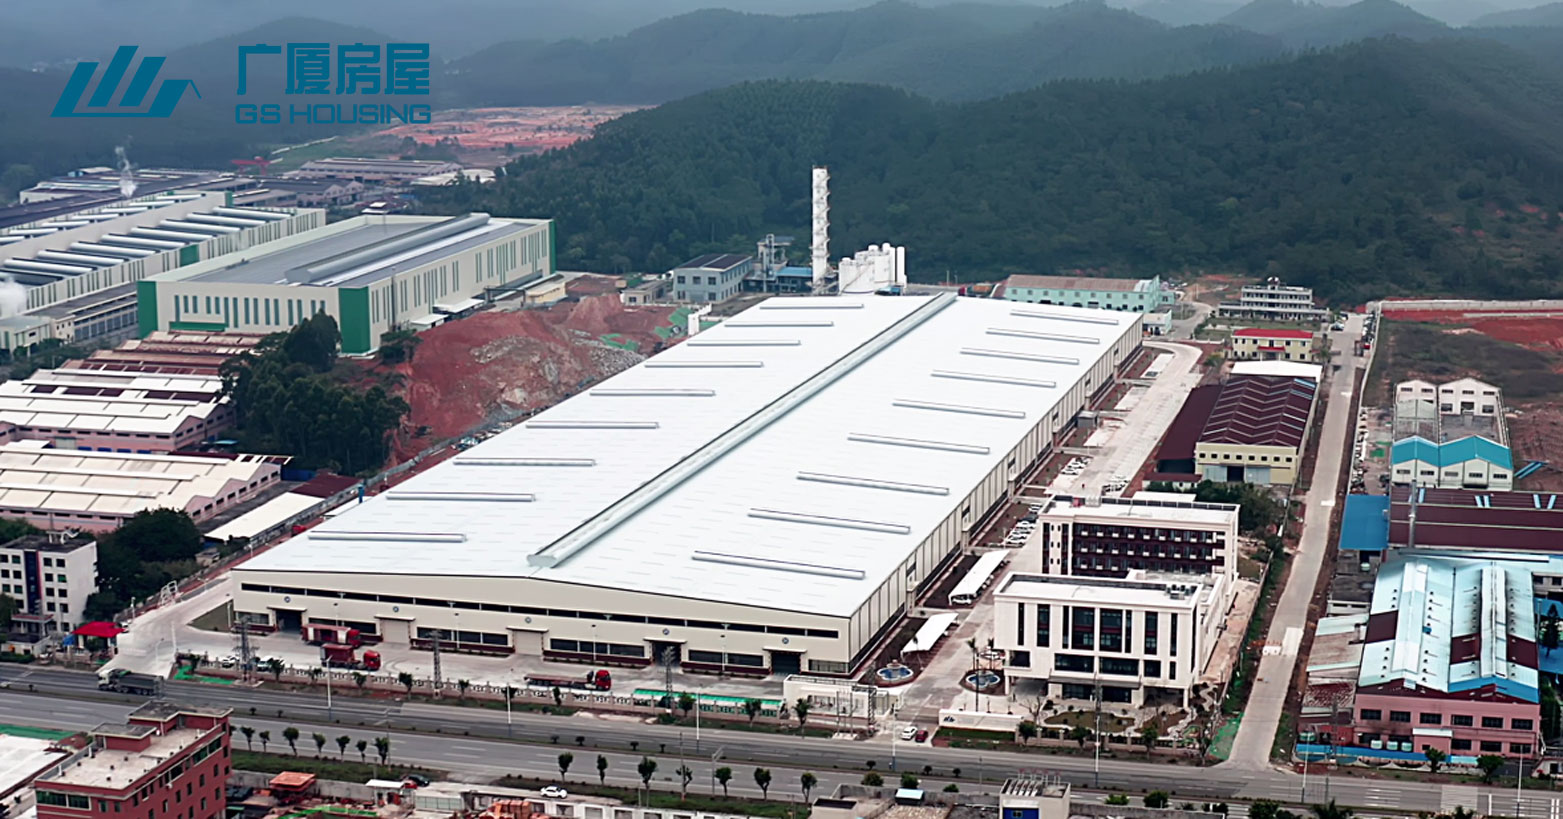 GS Housing – БНХАУ-ын өмнөд хэсэгт байрлах Гуандунгийн үйлдвэрлэлийн бааз (100 гаруй багц контейнер байшинг нэг өдрийн дотор дуусгах боломжтой)